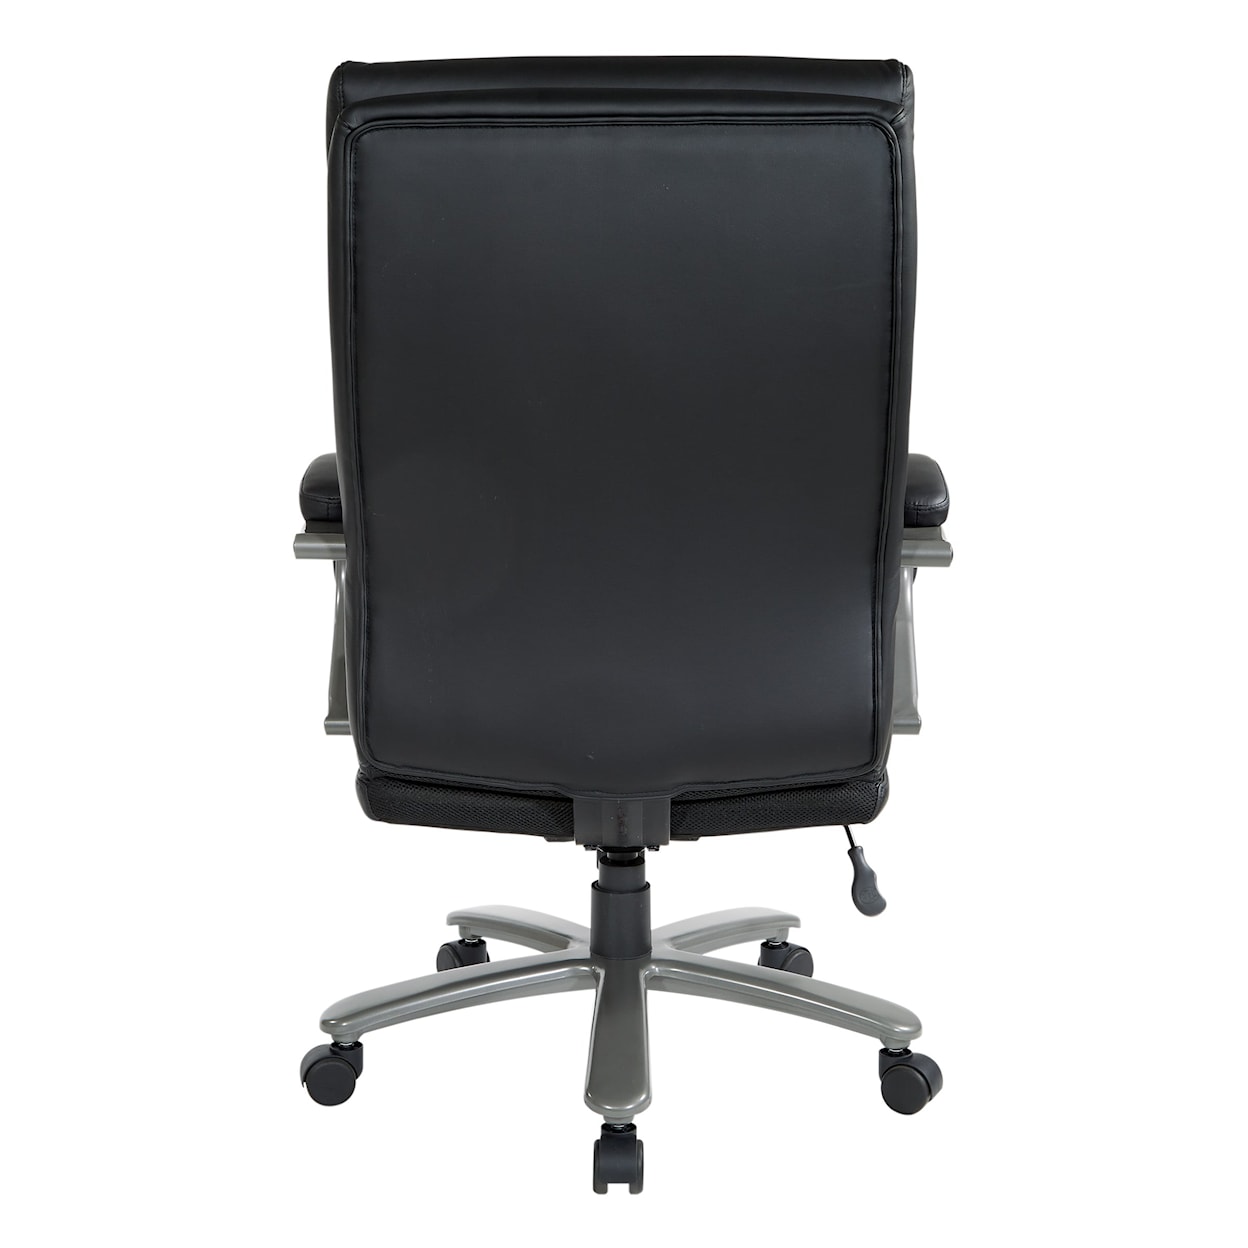 Office Star ECH Series Office Chair